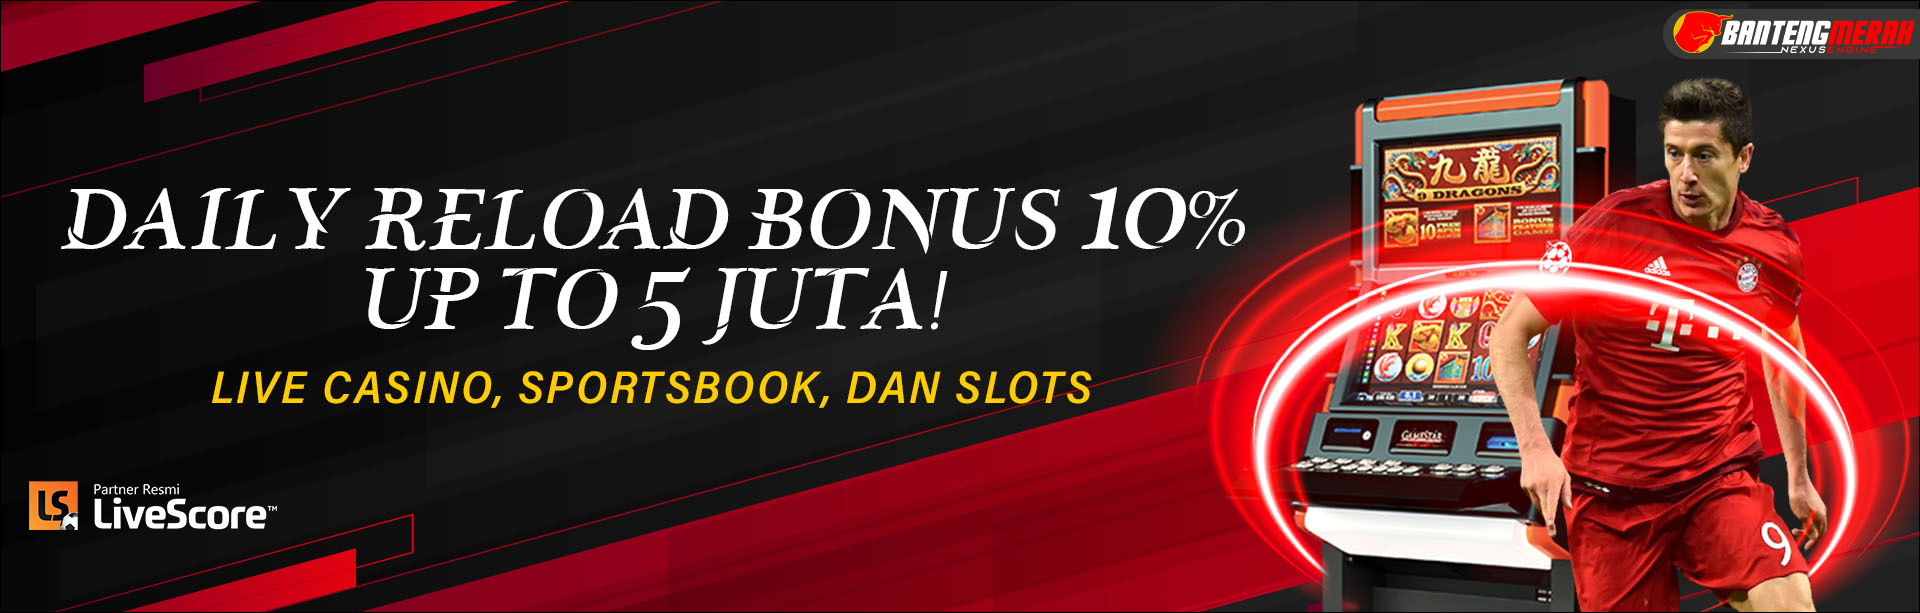 Daily Reload Bonus 10%